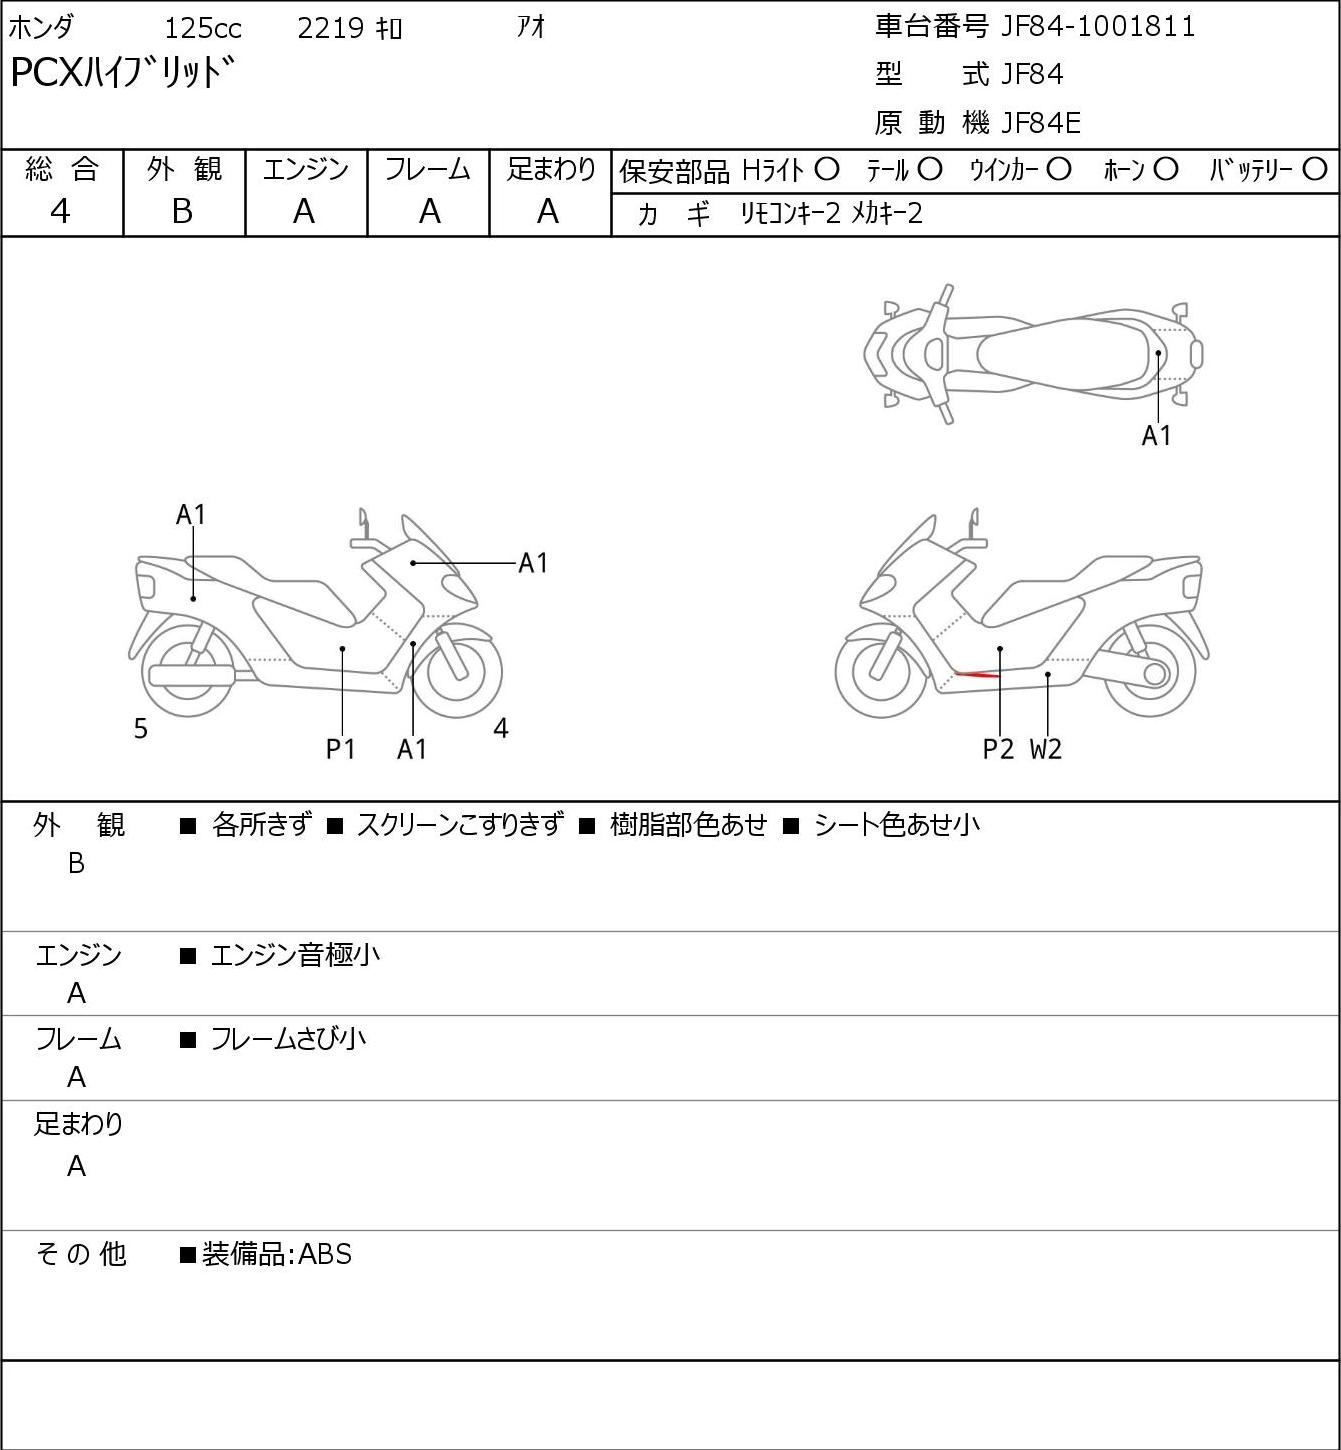 Honda PCX HYBRID JF84 г. 2219